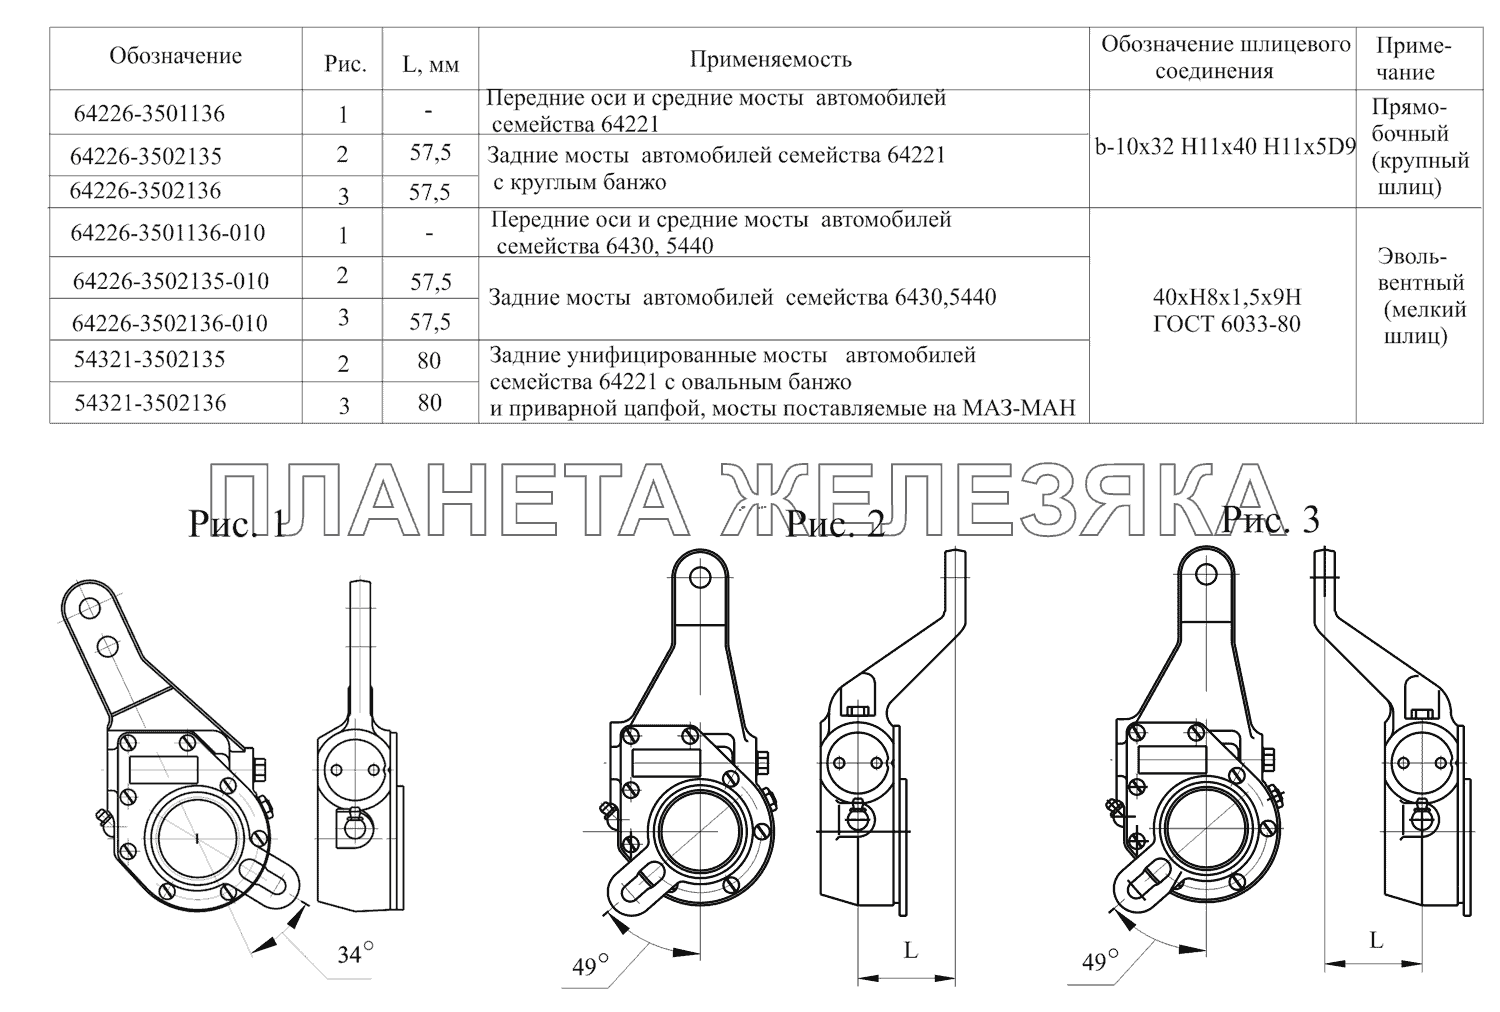 Автоматические регулировочные рычаги МАЗ-630333